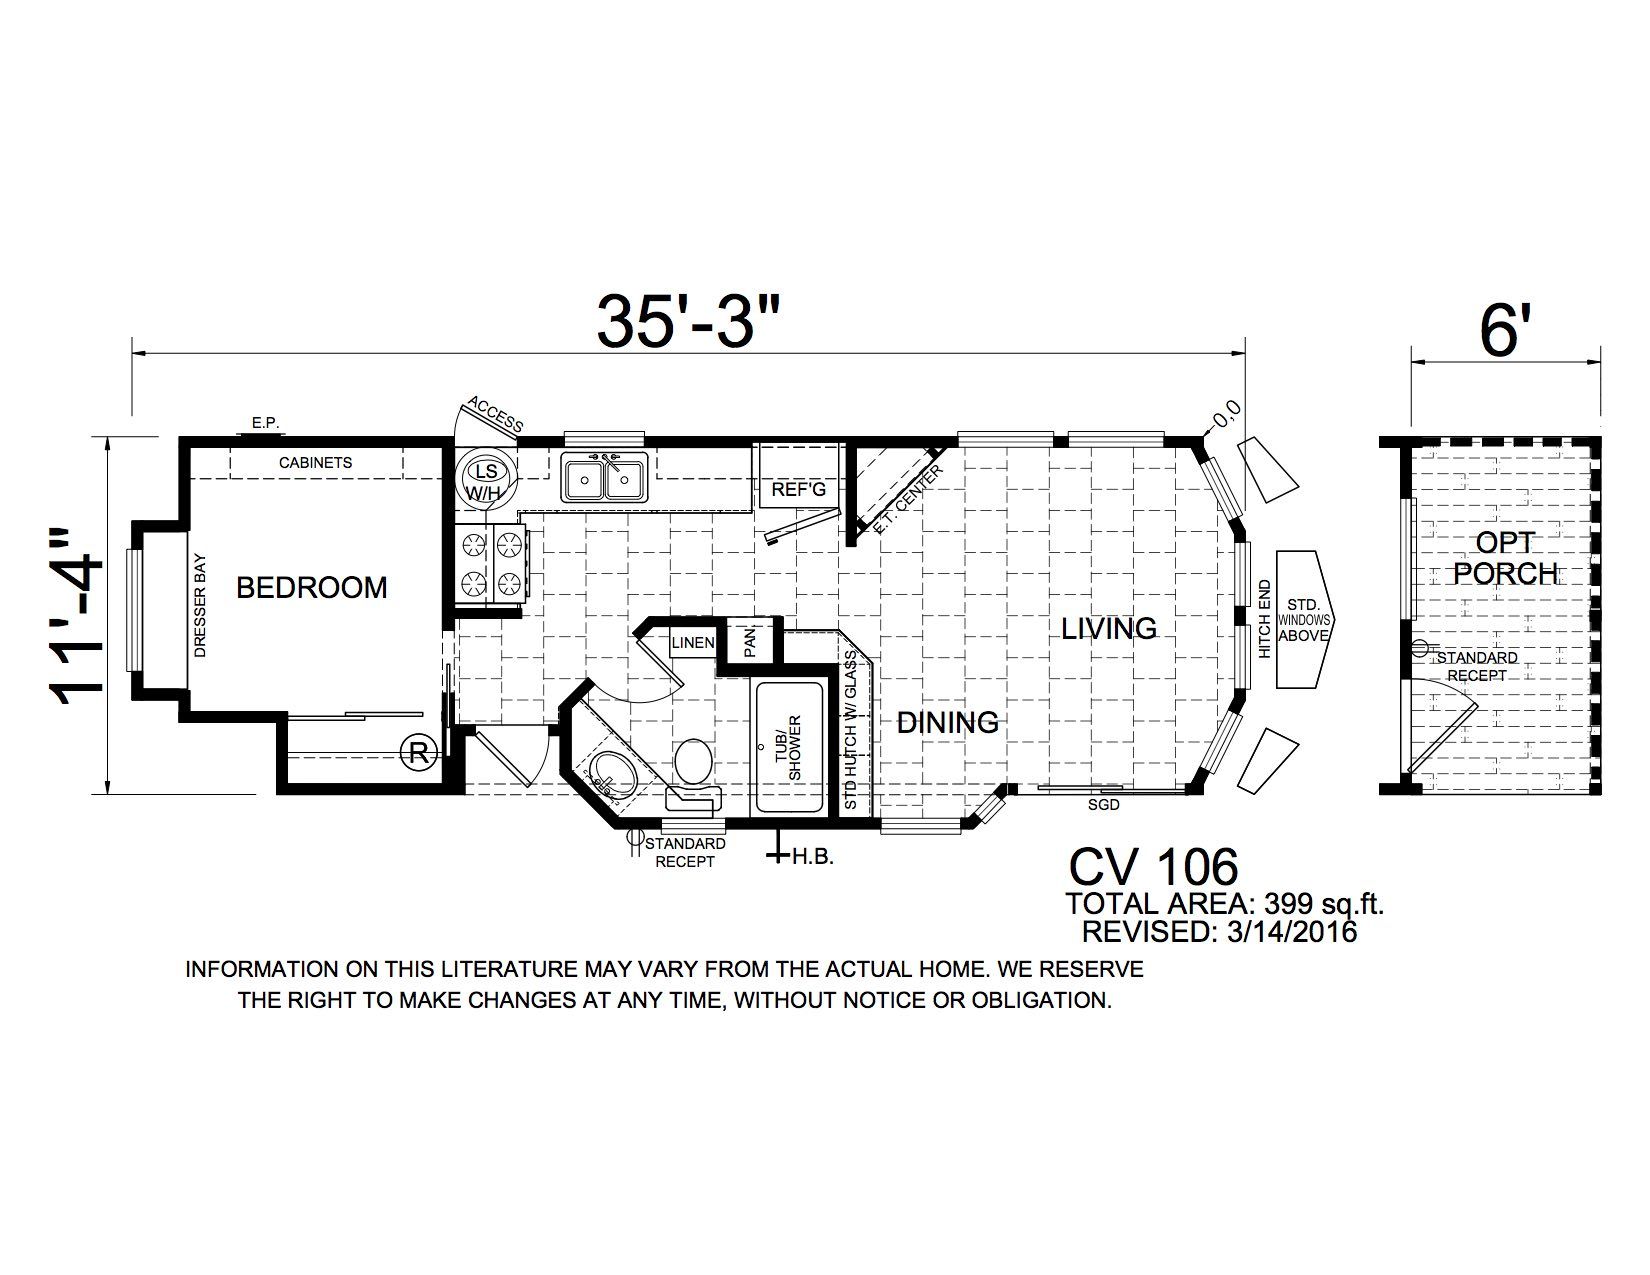 Homes Direct Modular Homes - Model DV106 - Floorplan